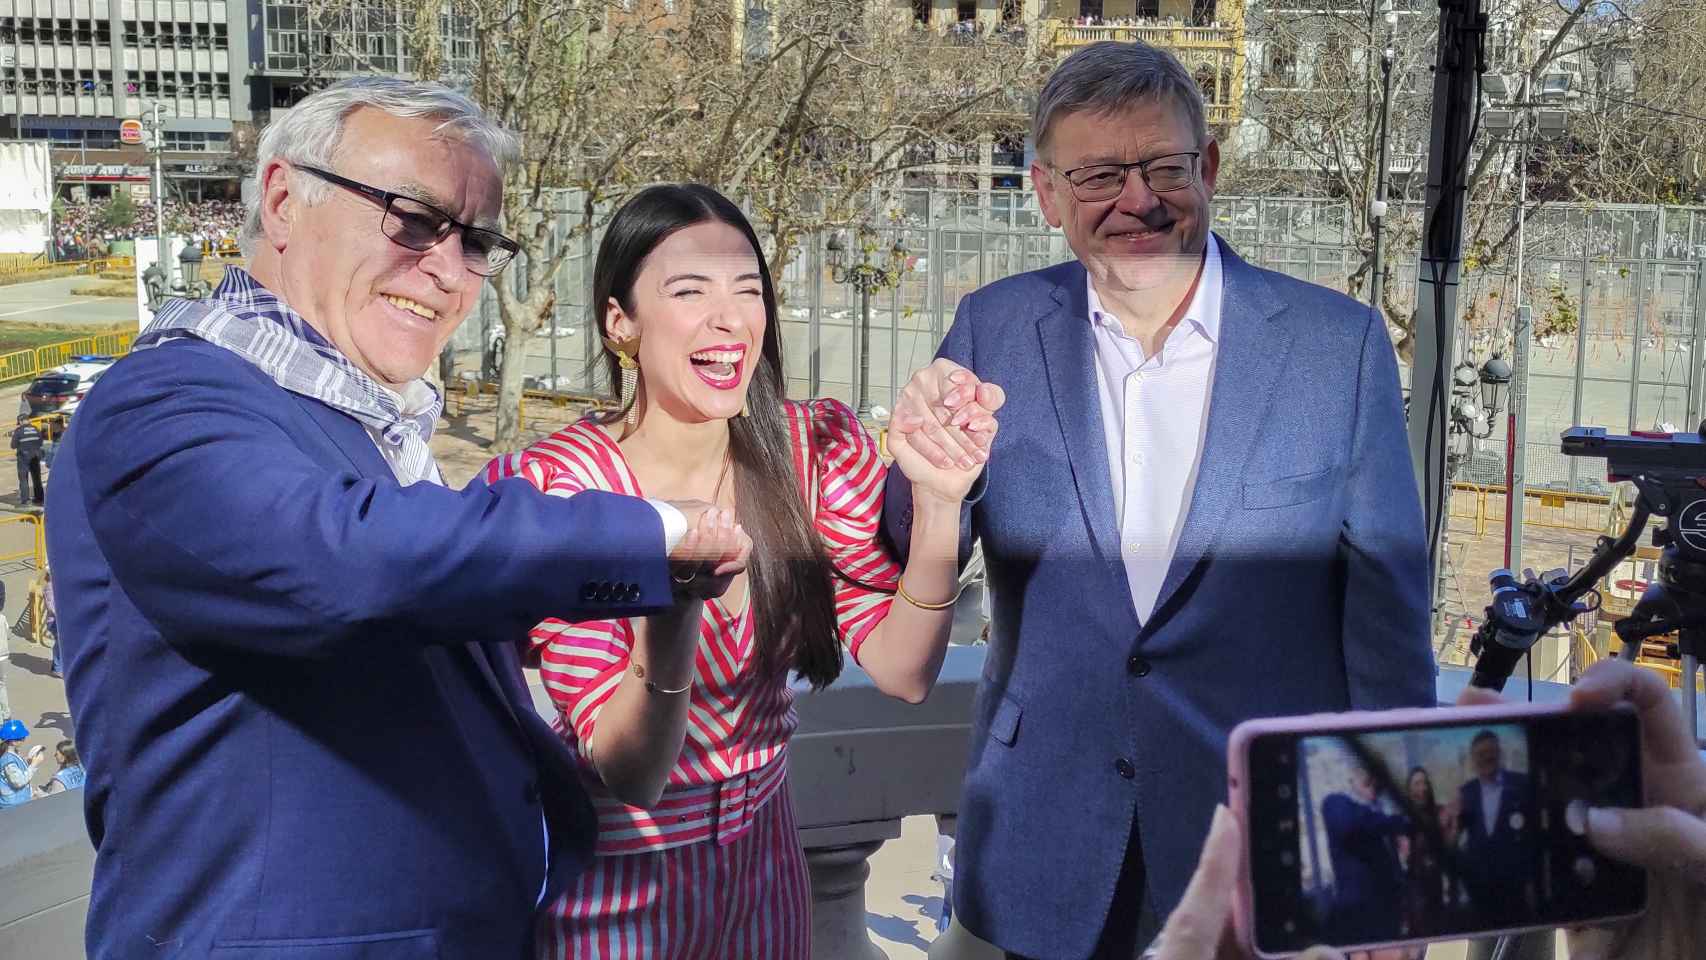 Blanca Paloma en su reciente visita a las Fallas de Valencia, con el alcalde y el presidente de la Generalitat.sueño que una bulería ganara Eurovisión